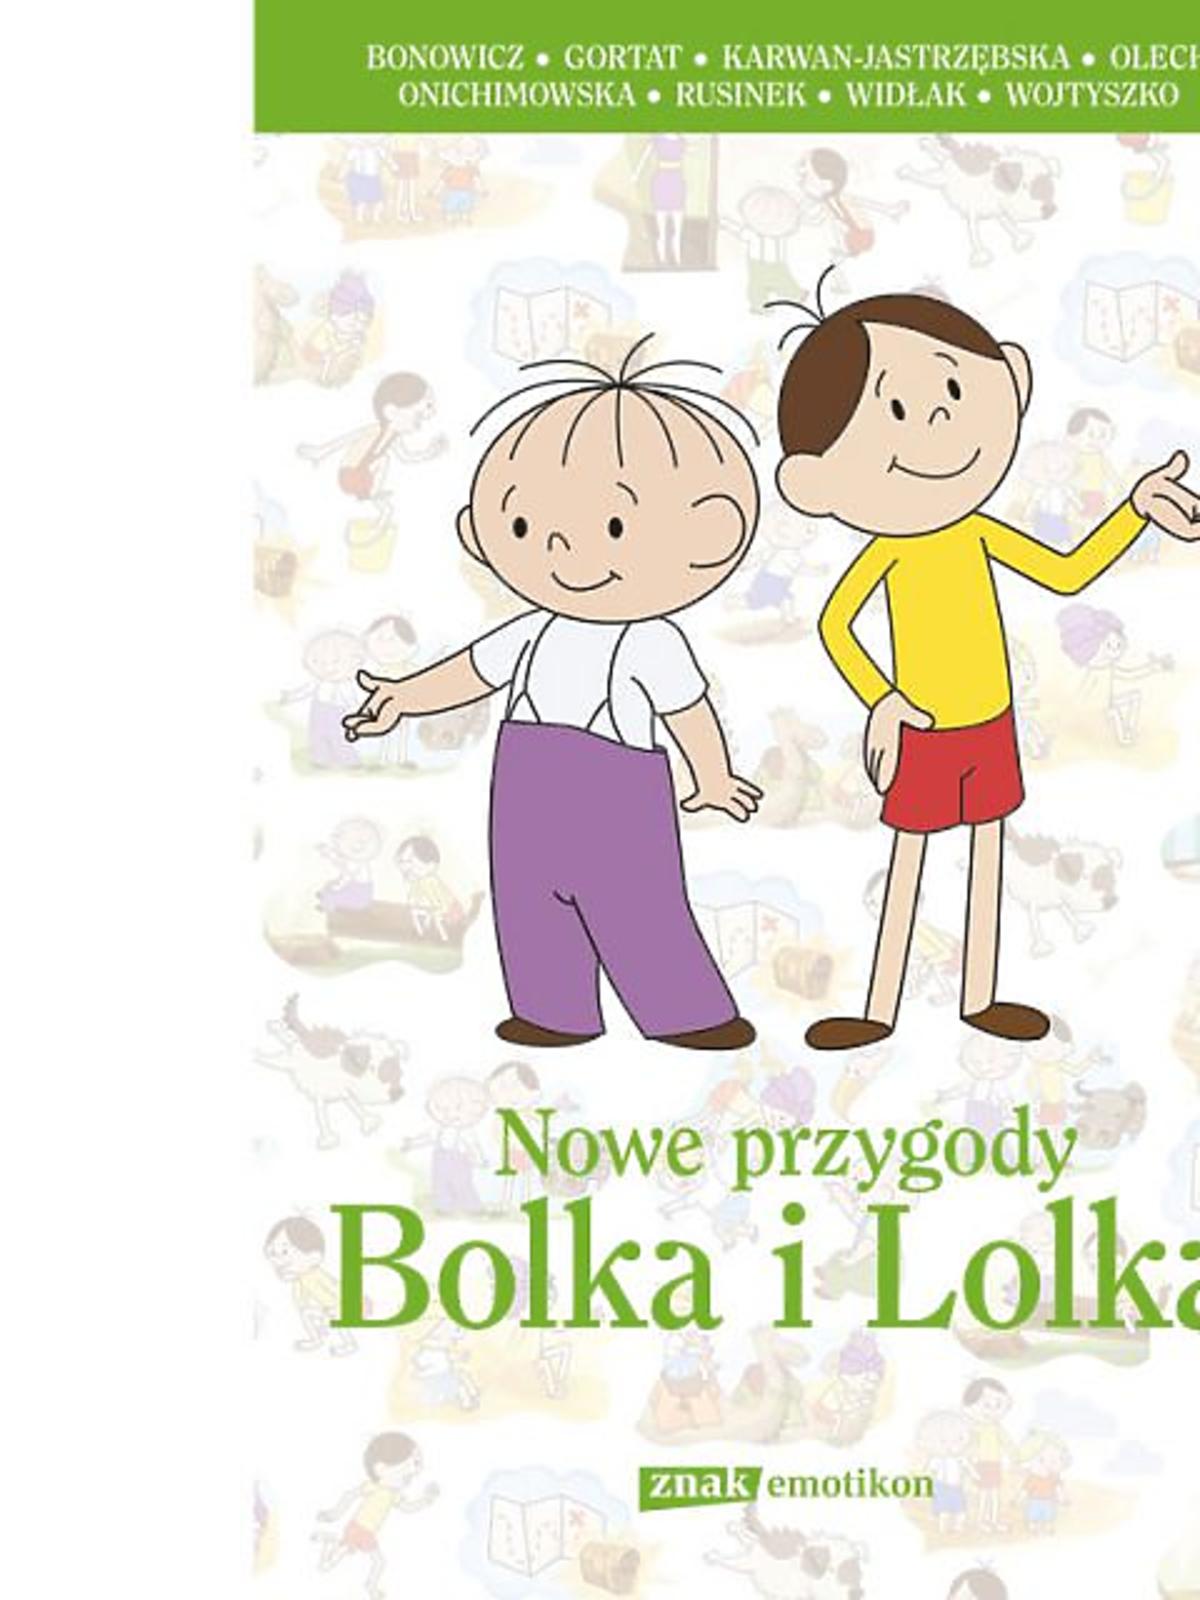 Nowe_przygody_Bolka_i_Lolka-1.jpg